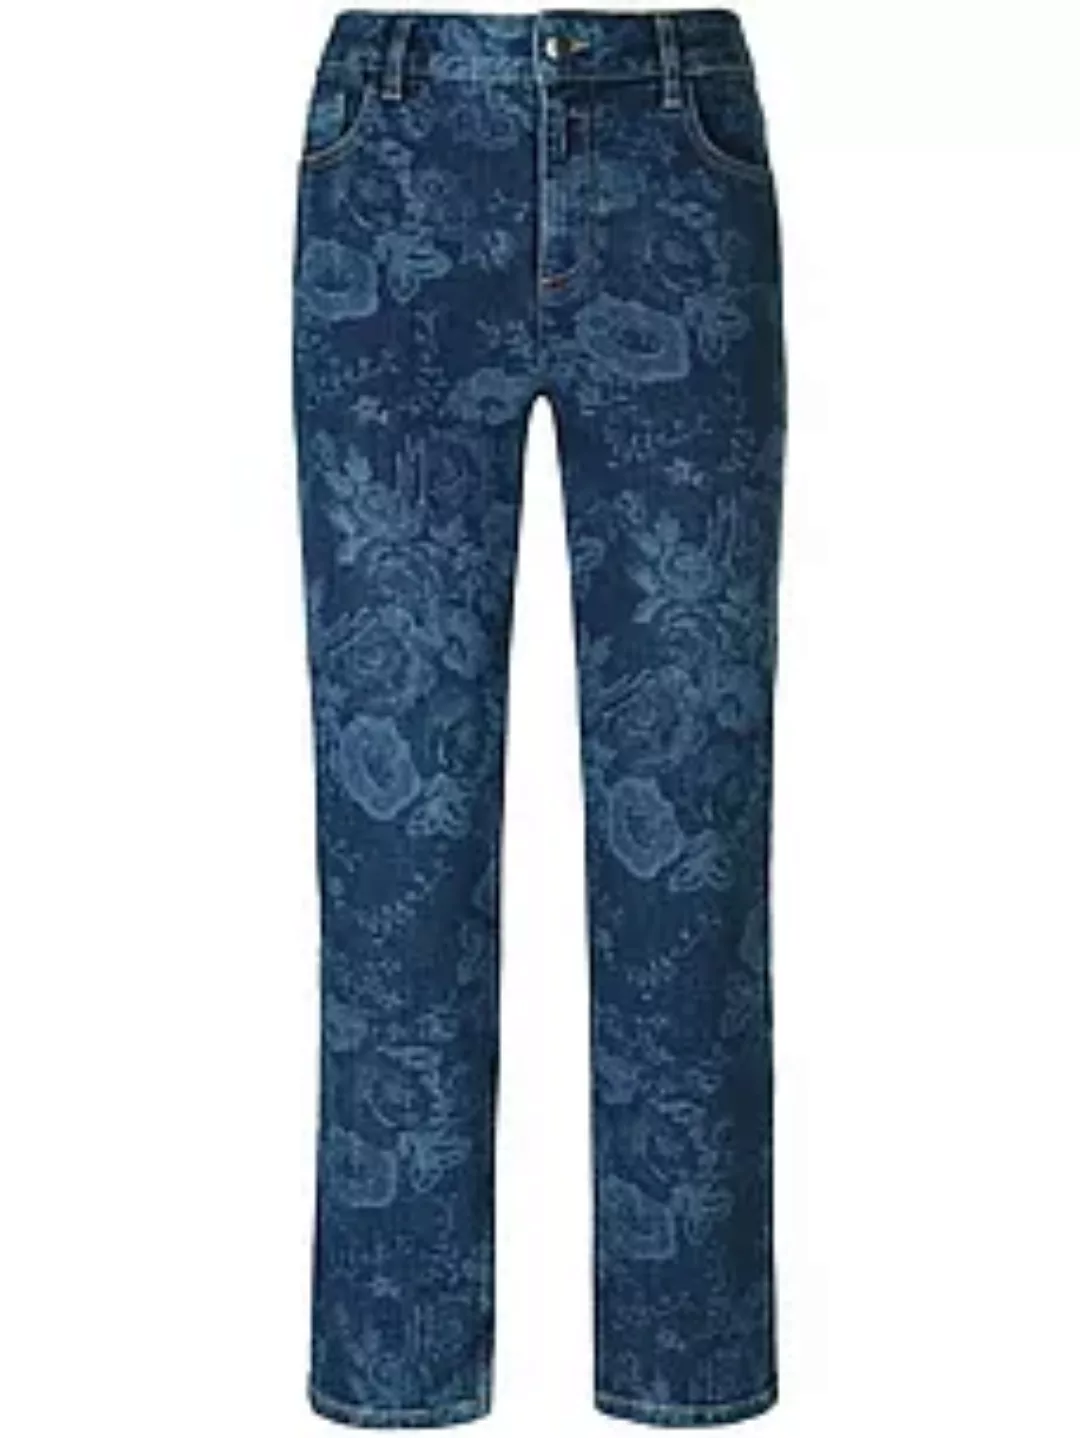 Knöchellange Jeans Passform Barbara Peter Hahn denim günstig online kaufen